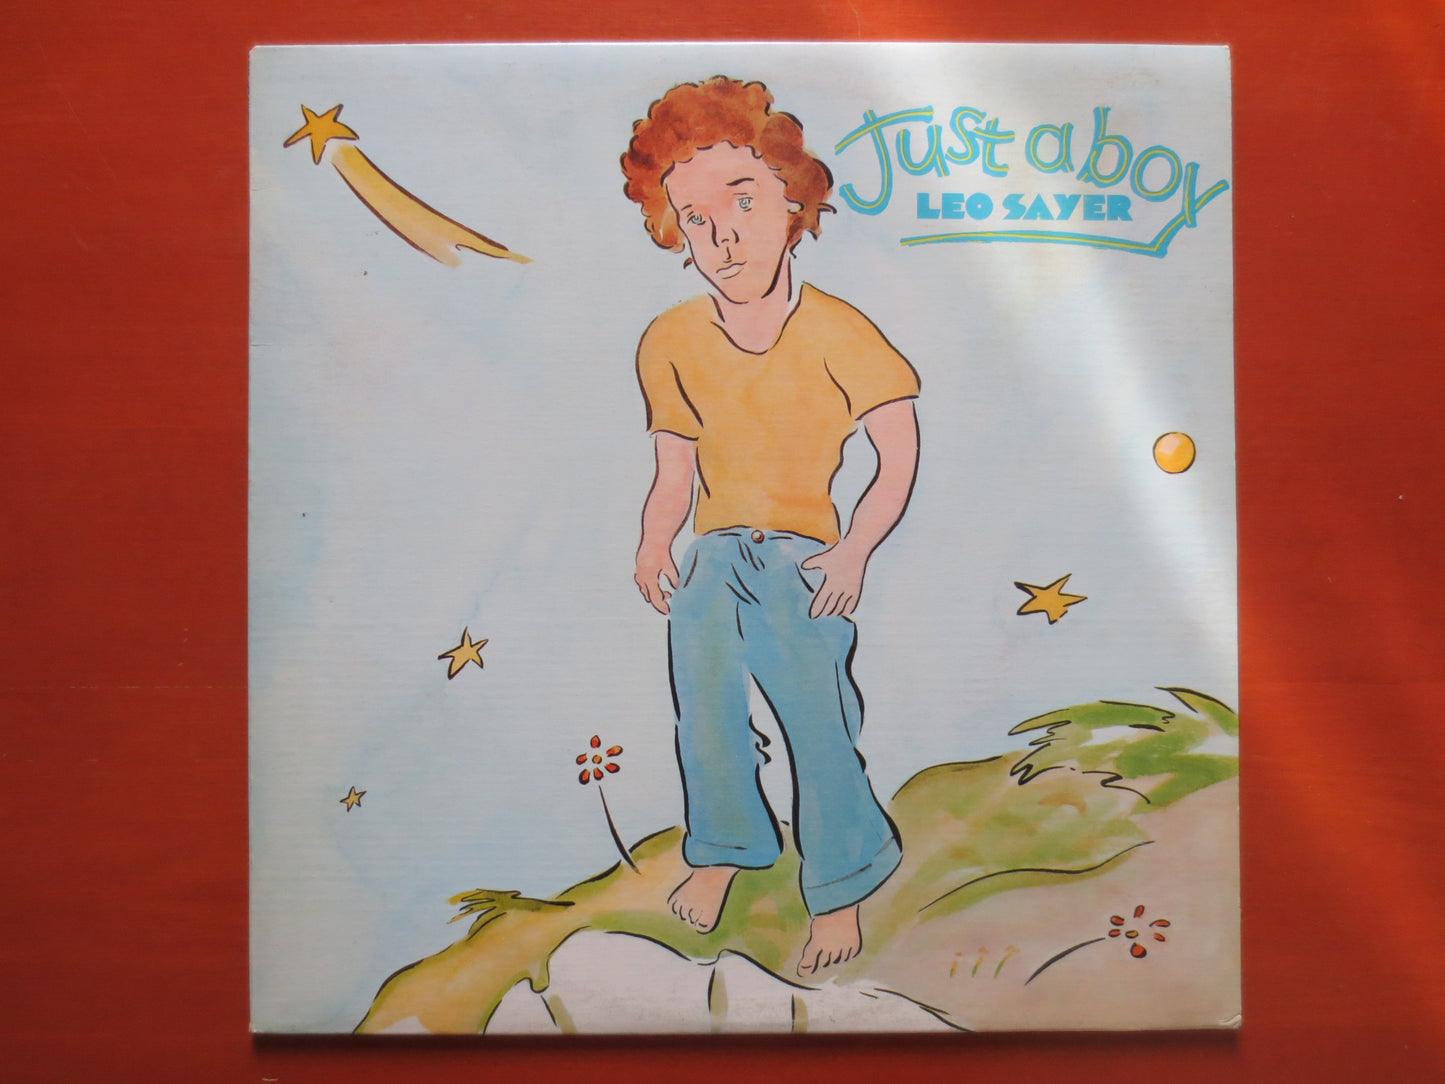 LEO SAYER, Just A BOY Album, Leo Sayer Record, Leo Sayer Vinyl, Leo Sayer Lp, Vintage Vinyl, Vinyl Lp, 1974 Records